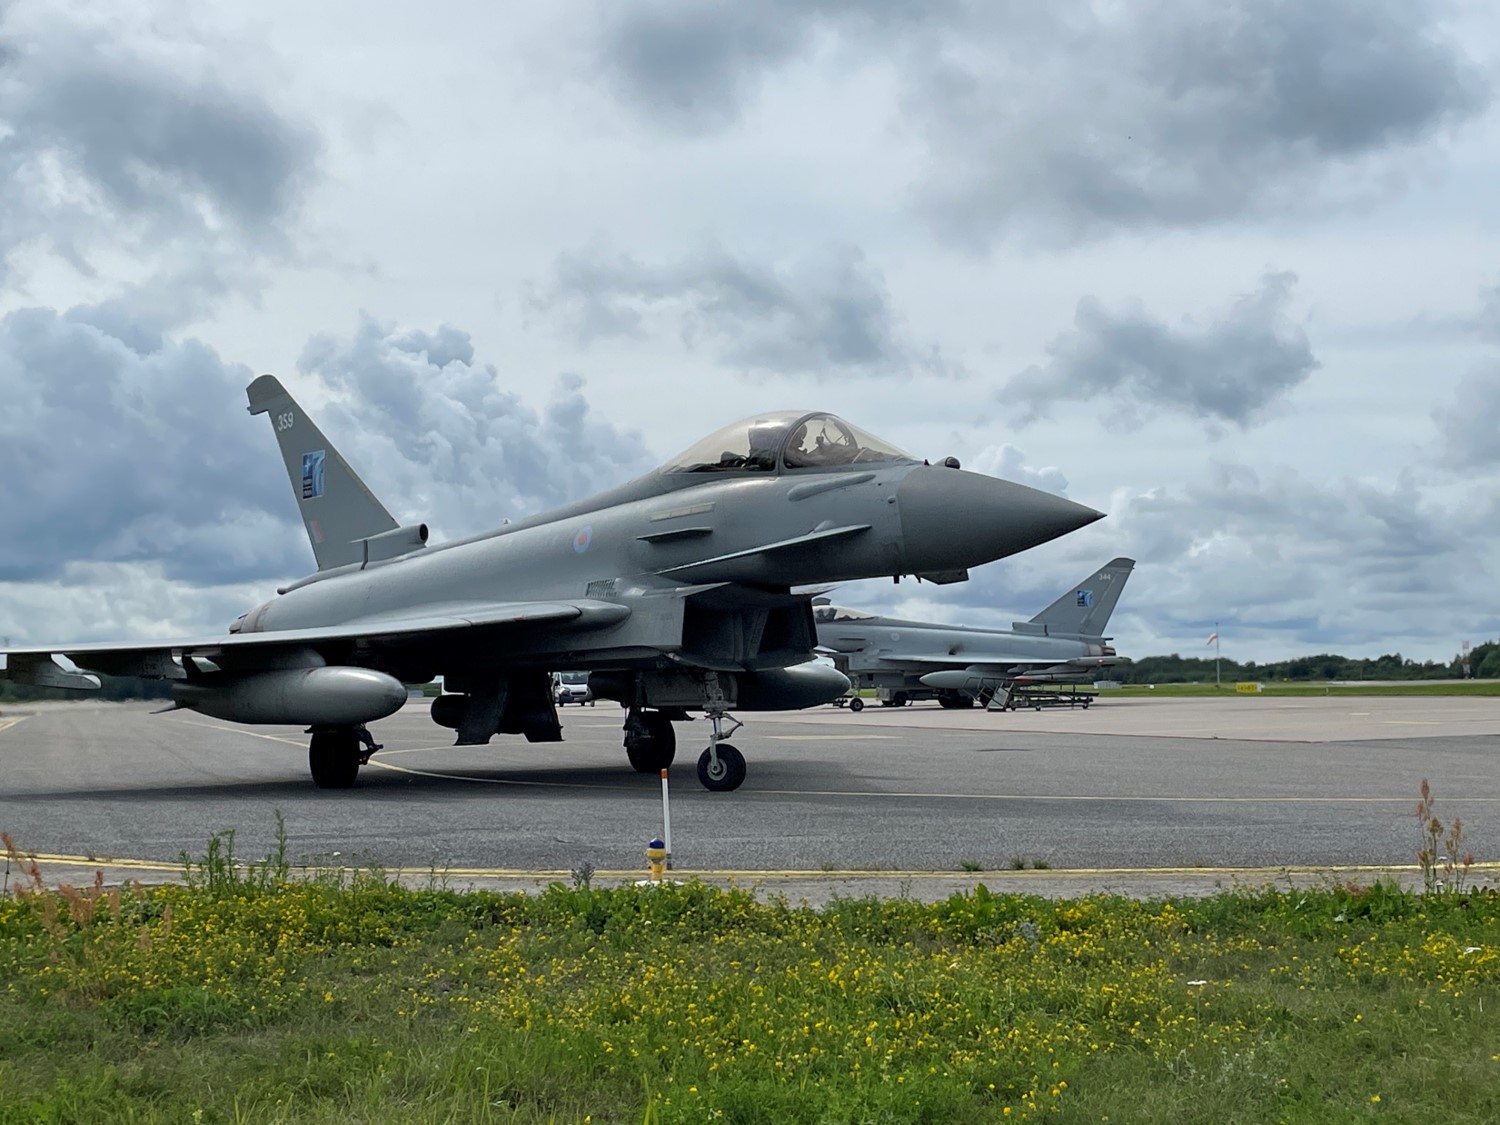 Typhoon aircraft on runway